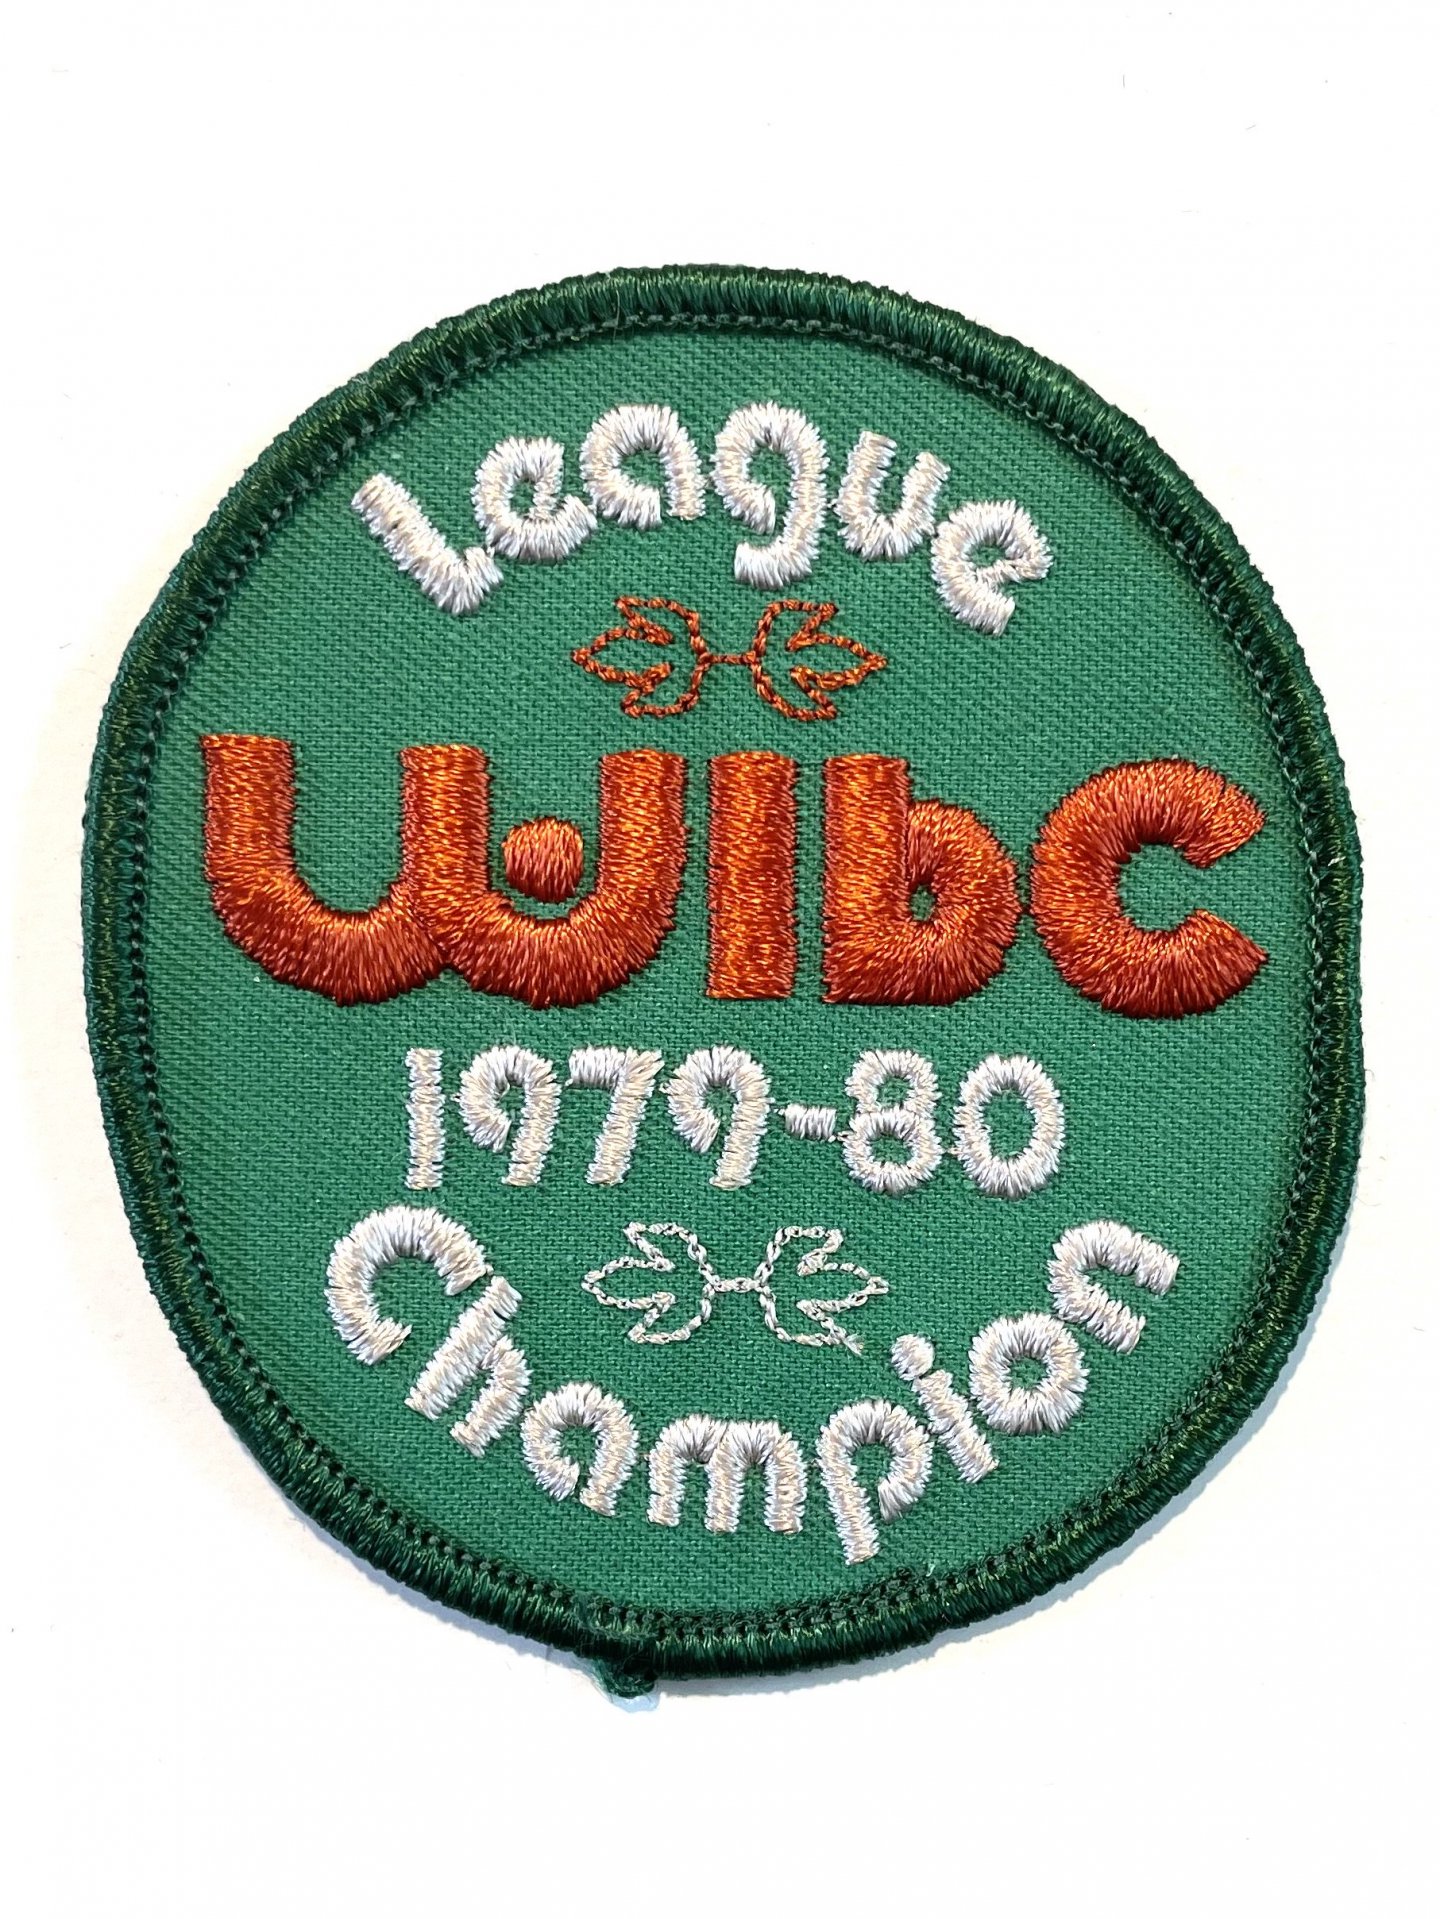 1979-80 